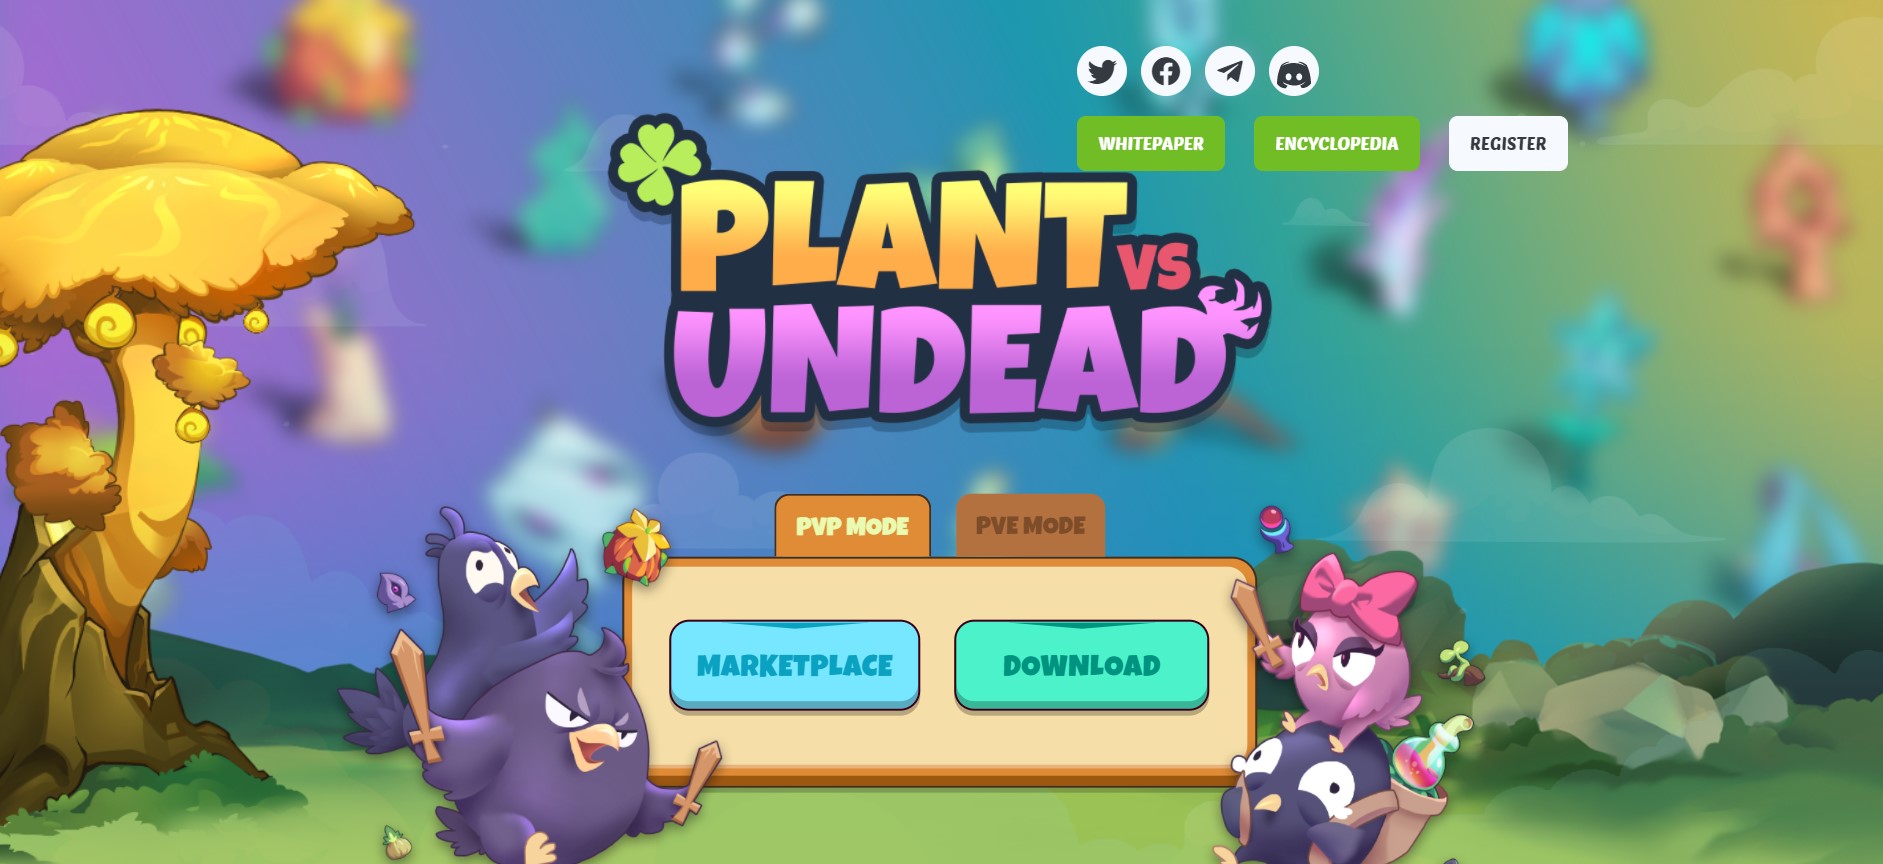 Undead plants vs Plant vs